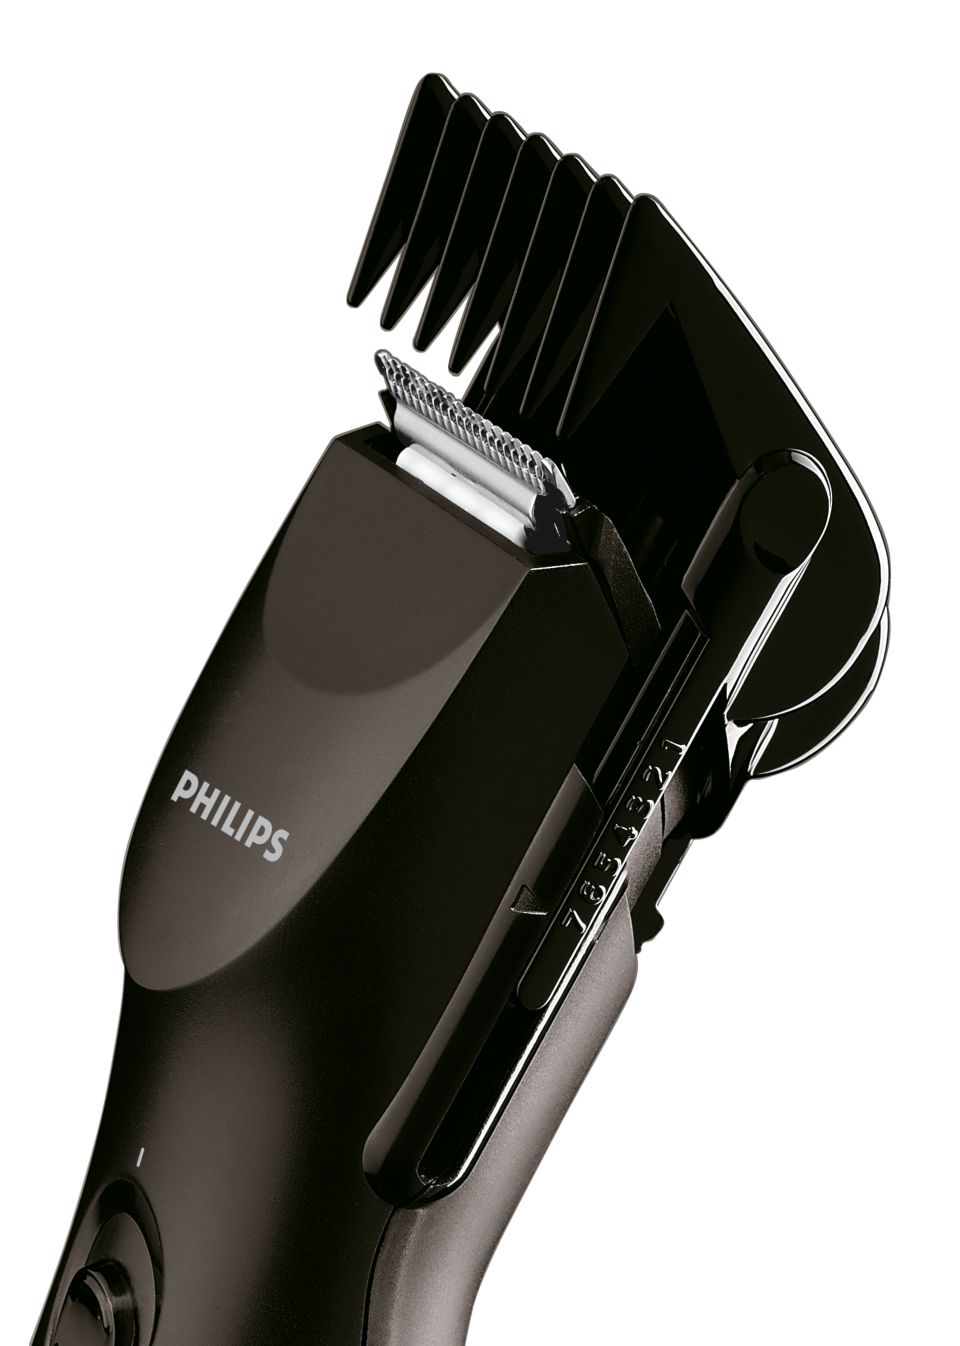 Машинка philips qc. Philips qc5002. Машинка для стрижки Philips qc5002. Гребень Филипс qc5002. Филипс QC 5002.